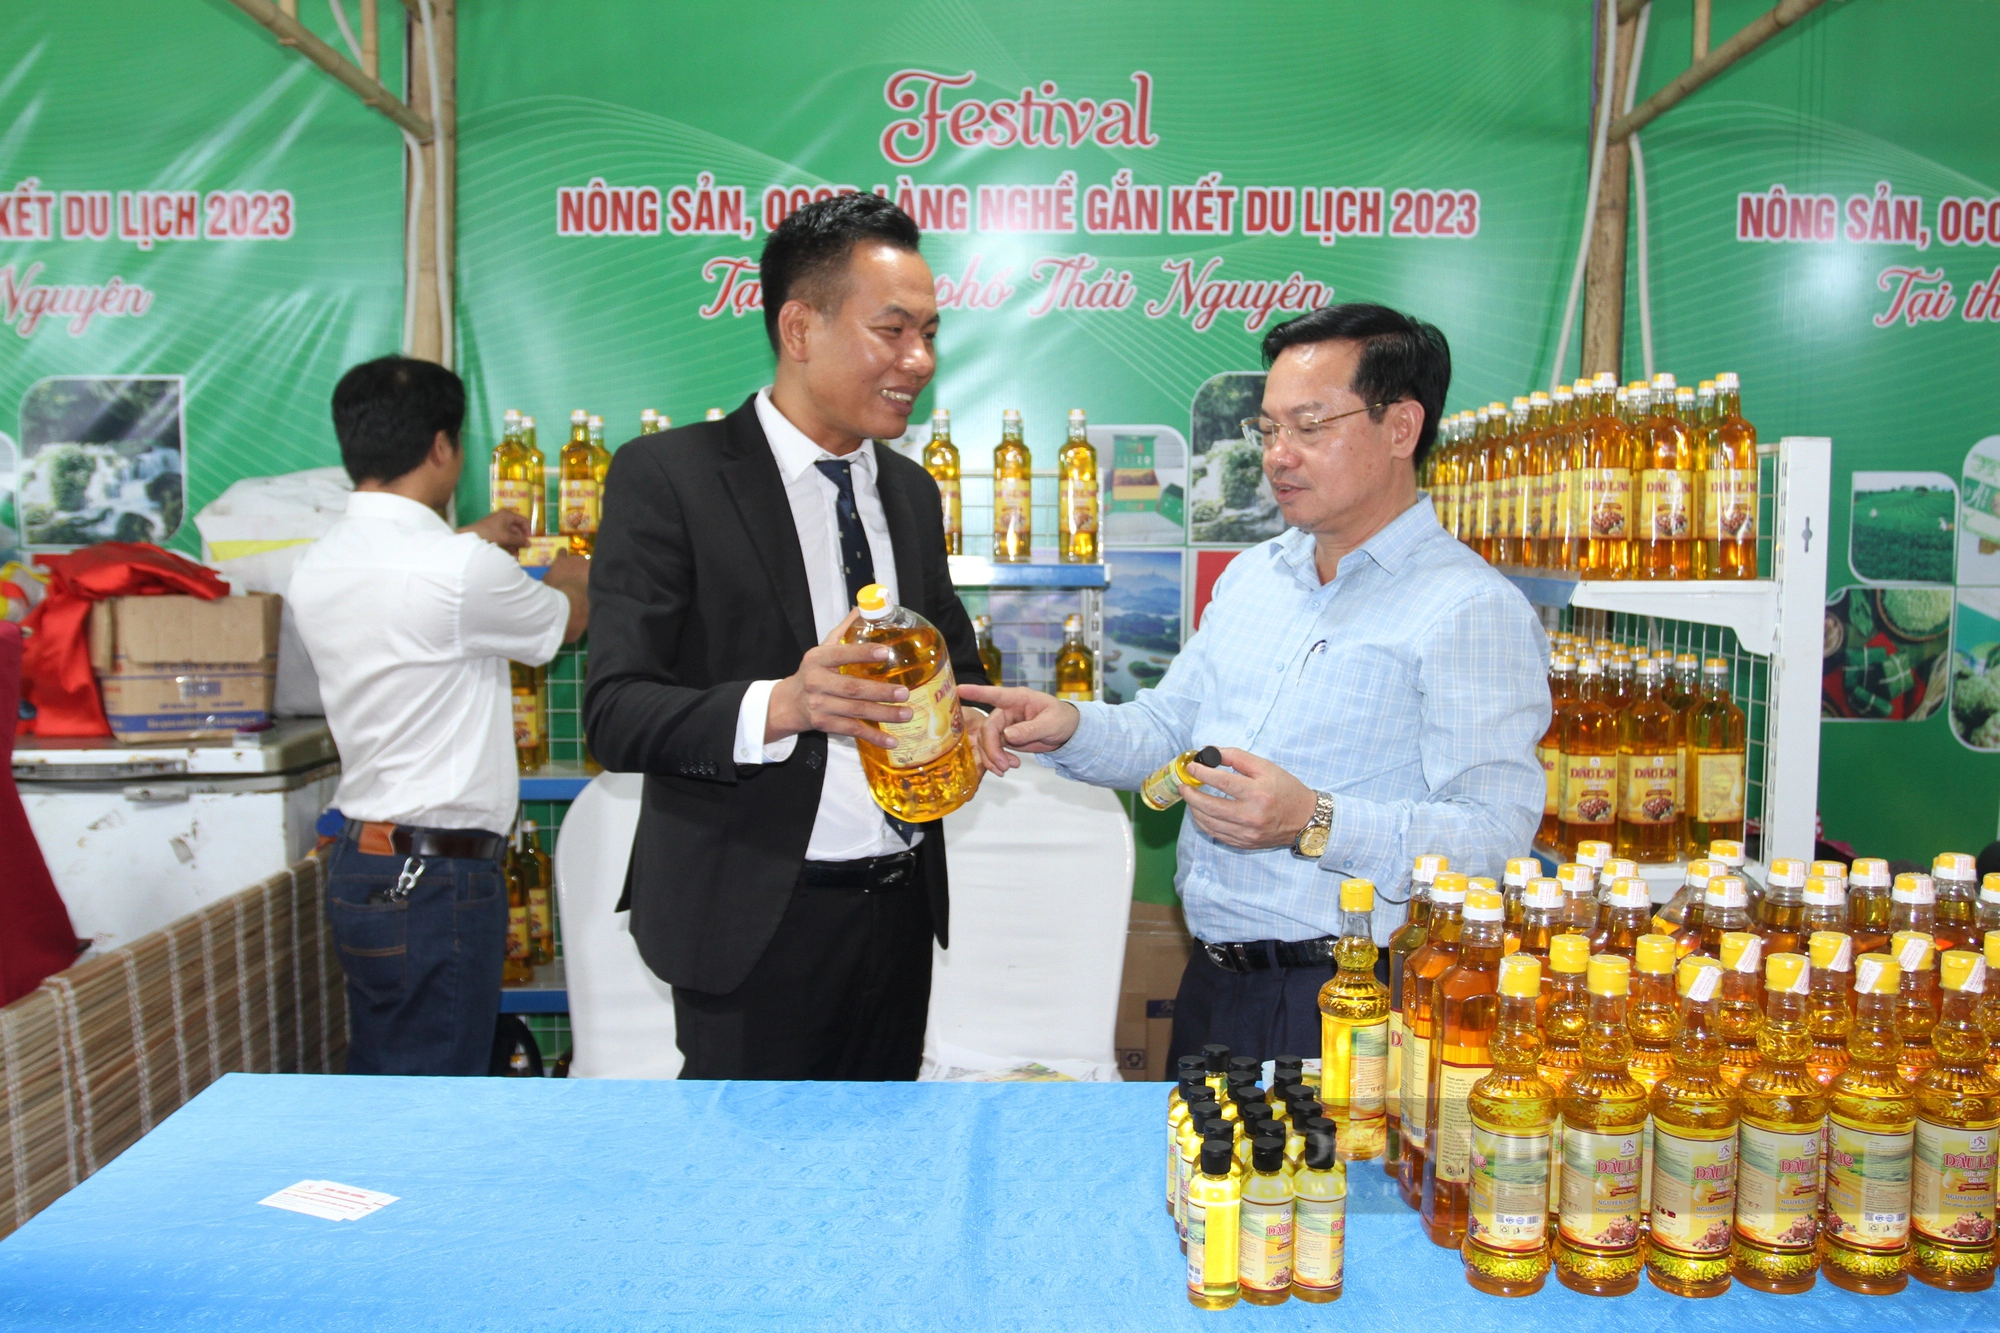 Festival Nông sản, OCOP, làng nghề gắn kết du lịch - Thái Nguyên 2023: Quy tụ đặc sản vùng miền - Ảnh 3.